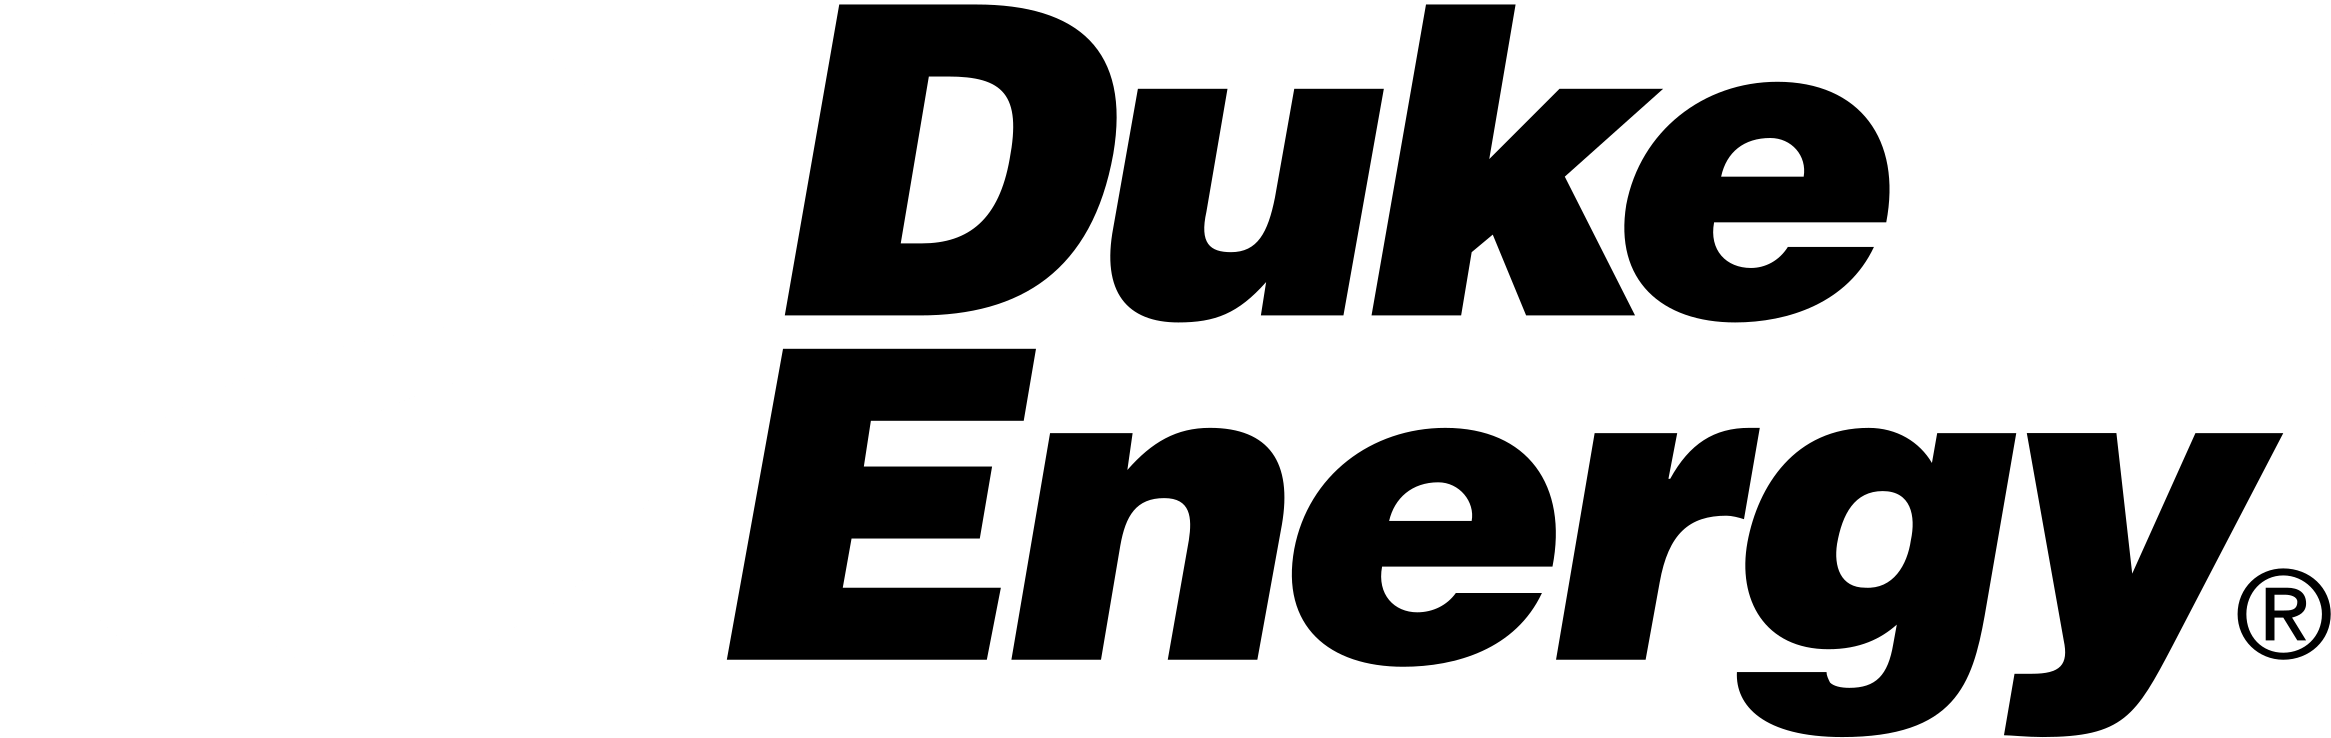 Duke Energy Logo Black And White - Duke Energy Clipart (2400x2400), Png Download